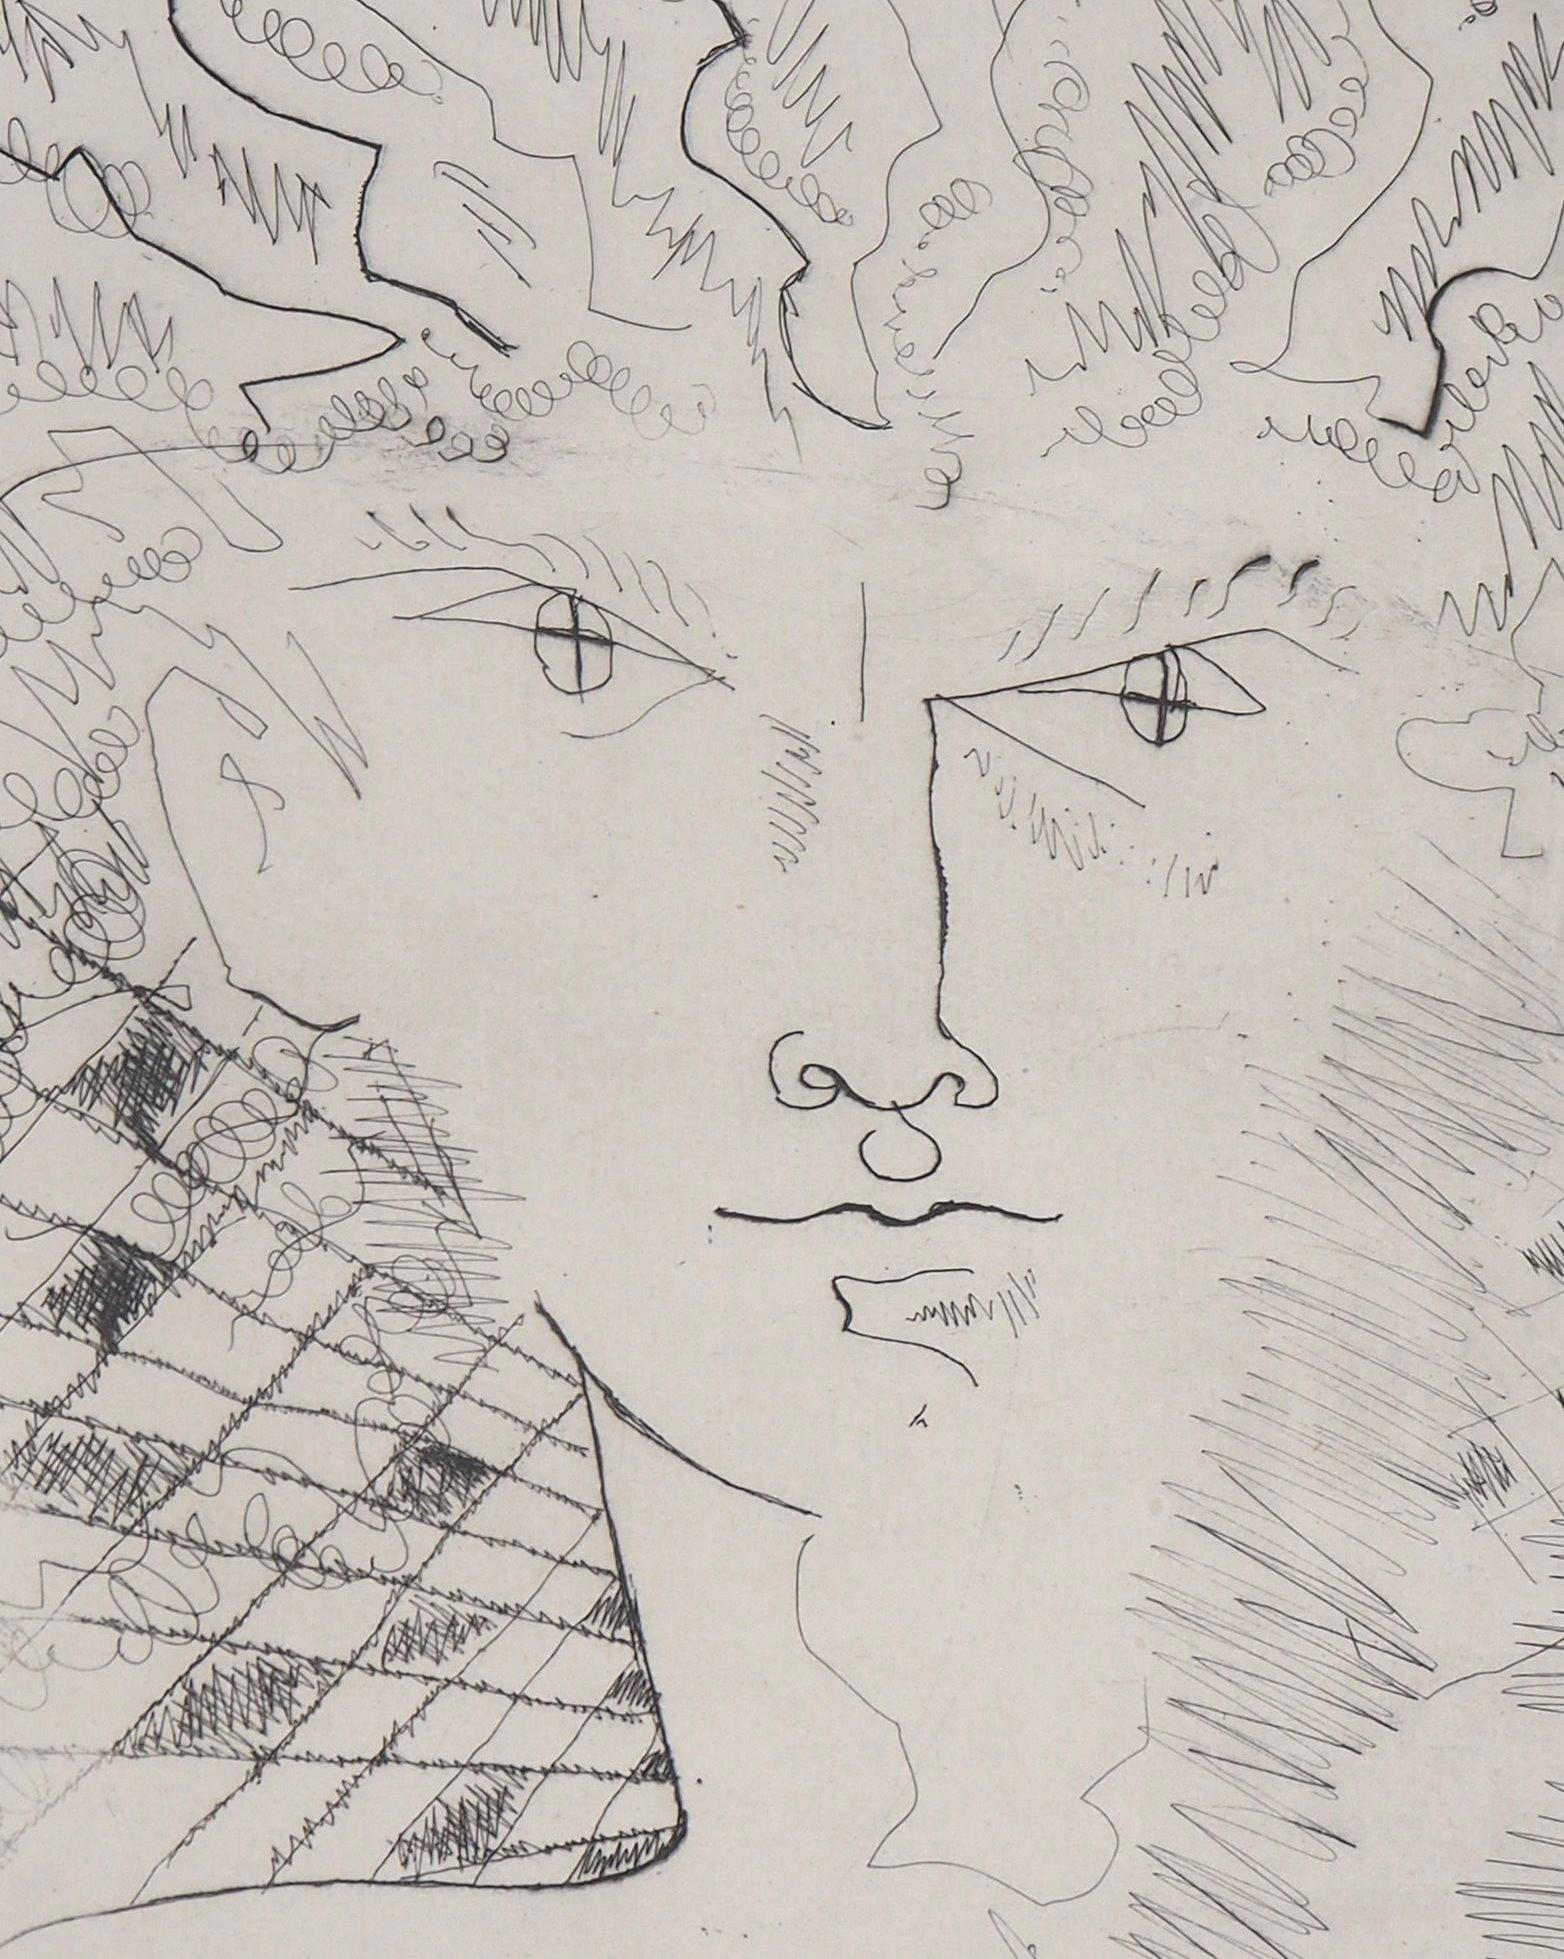 Jean Cocteau
Surrealistisches Porträt, 1946

Original-Radierung
Gedruckte Unterschrift auf der Platte
Auf BFK Rives Vellum, 32,5 x 25 cm (ca. 12,7 x 9,8 inch)
Auflage limitiert auf 300 Exemplare (nicht nummerierte Exemplare)

INFORMATION : Diese